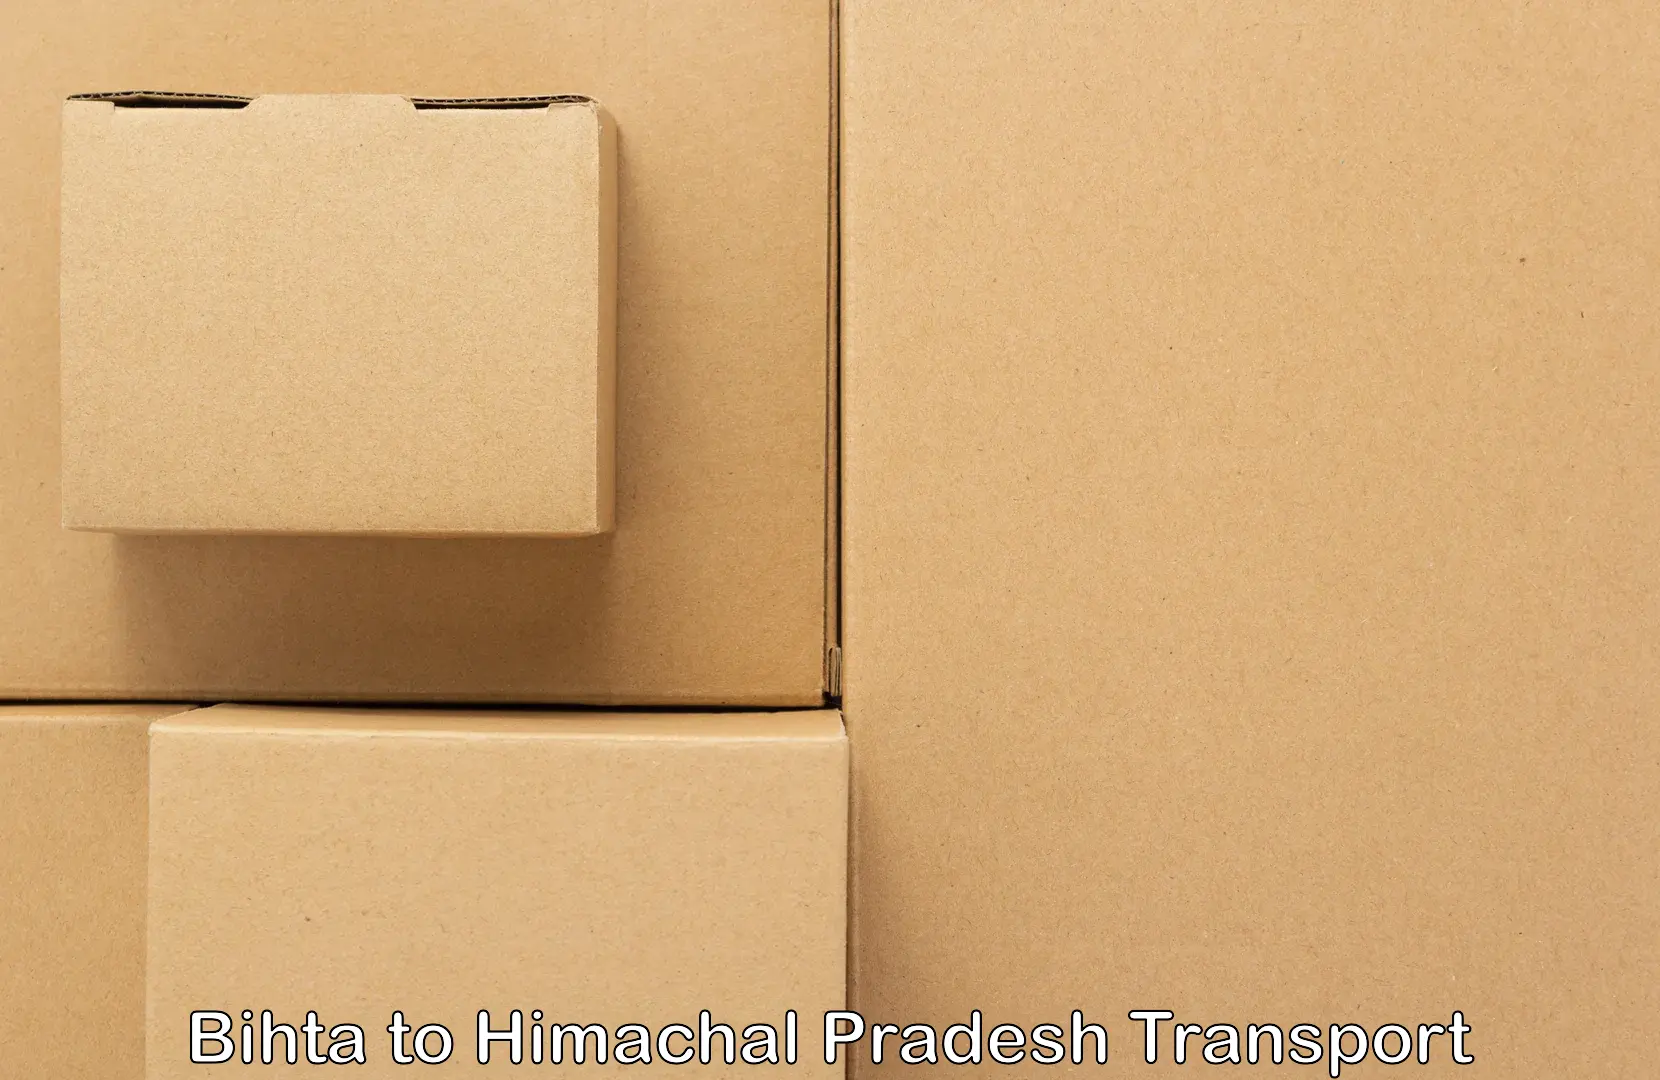 Furniture transport service Bihta to Dharamshala